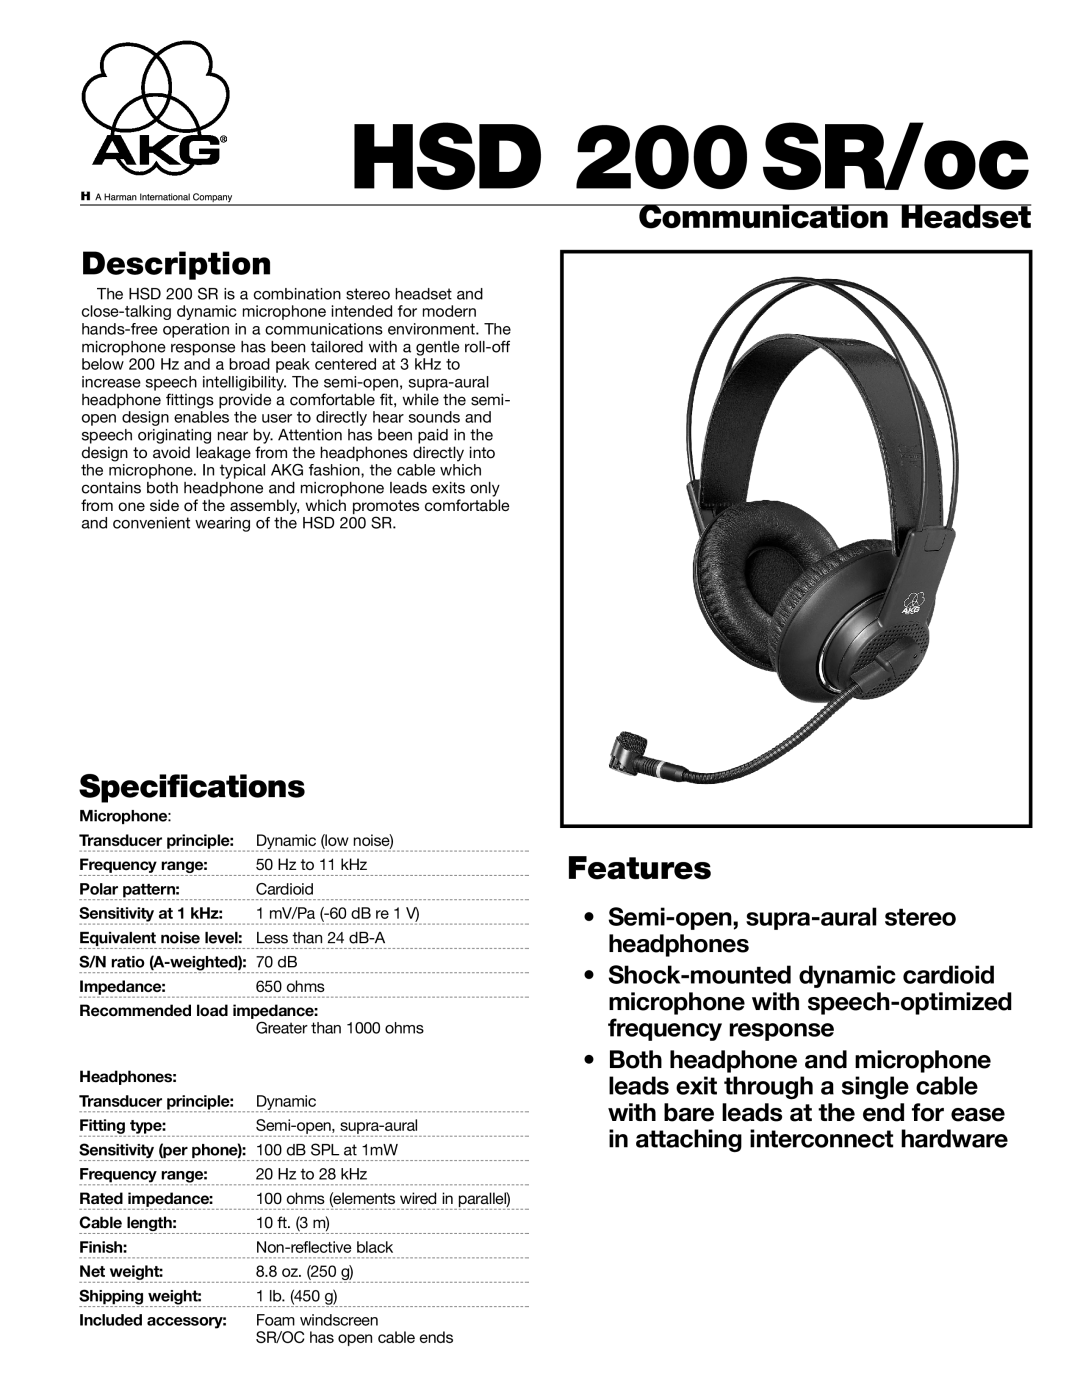 AKG Acoustics HSD 200 SR/oc specifications Communication Headset Description, Specifications, Features, HSD 200SR/oc 